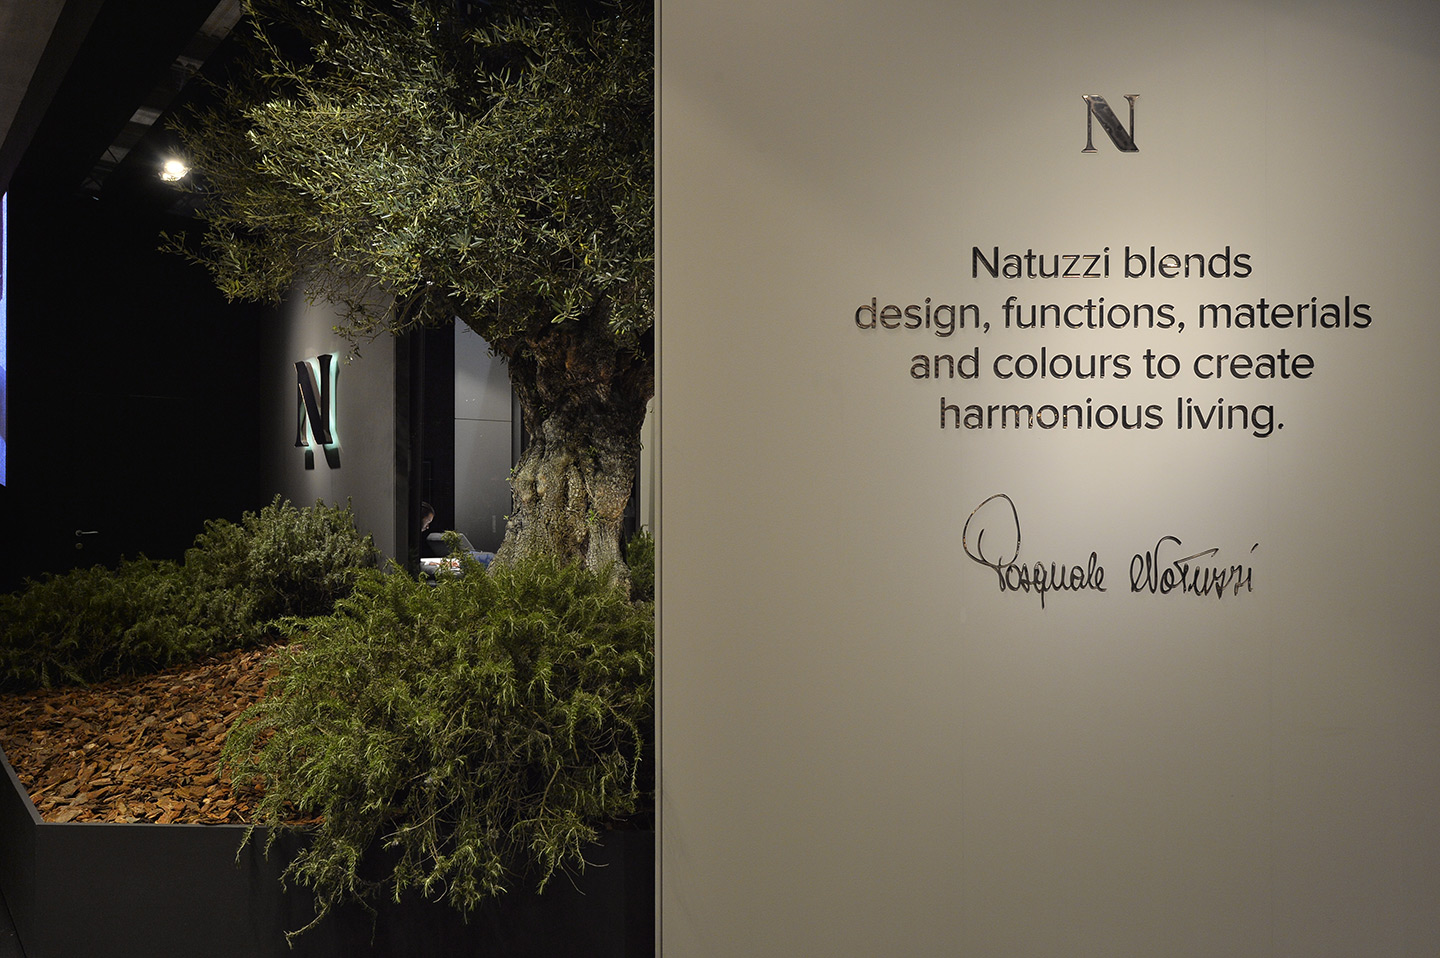 Stand di natuzzi con alberi e cespugli all'ingreso e cartello grigio con scritta: "Natuzzi blends design, functions, materials and colours to create harmonious living." e la firma